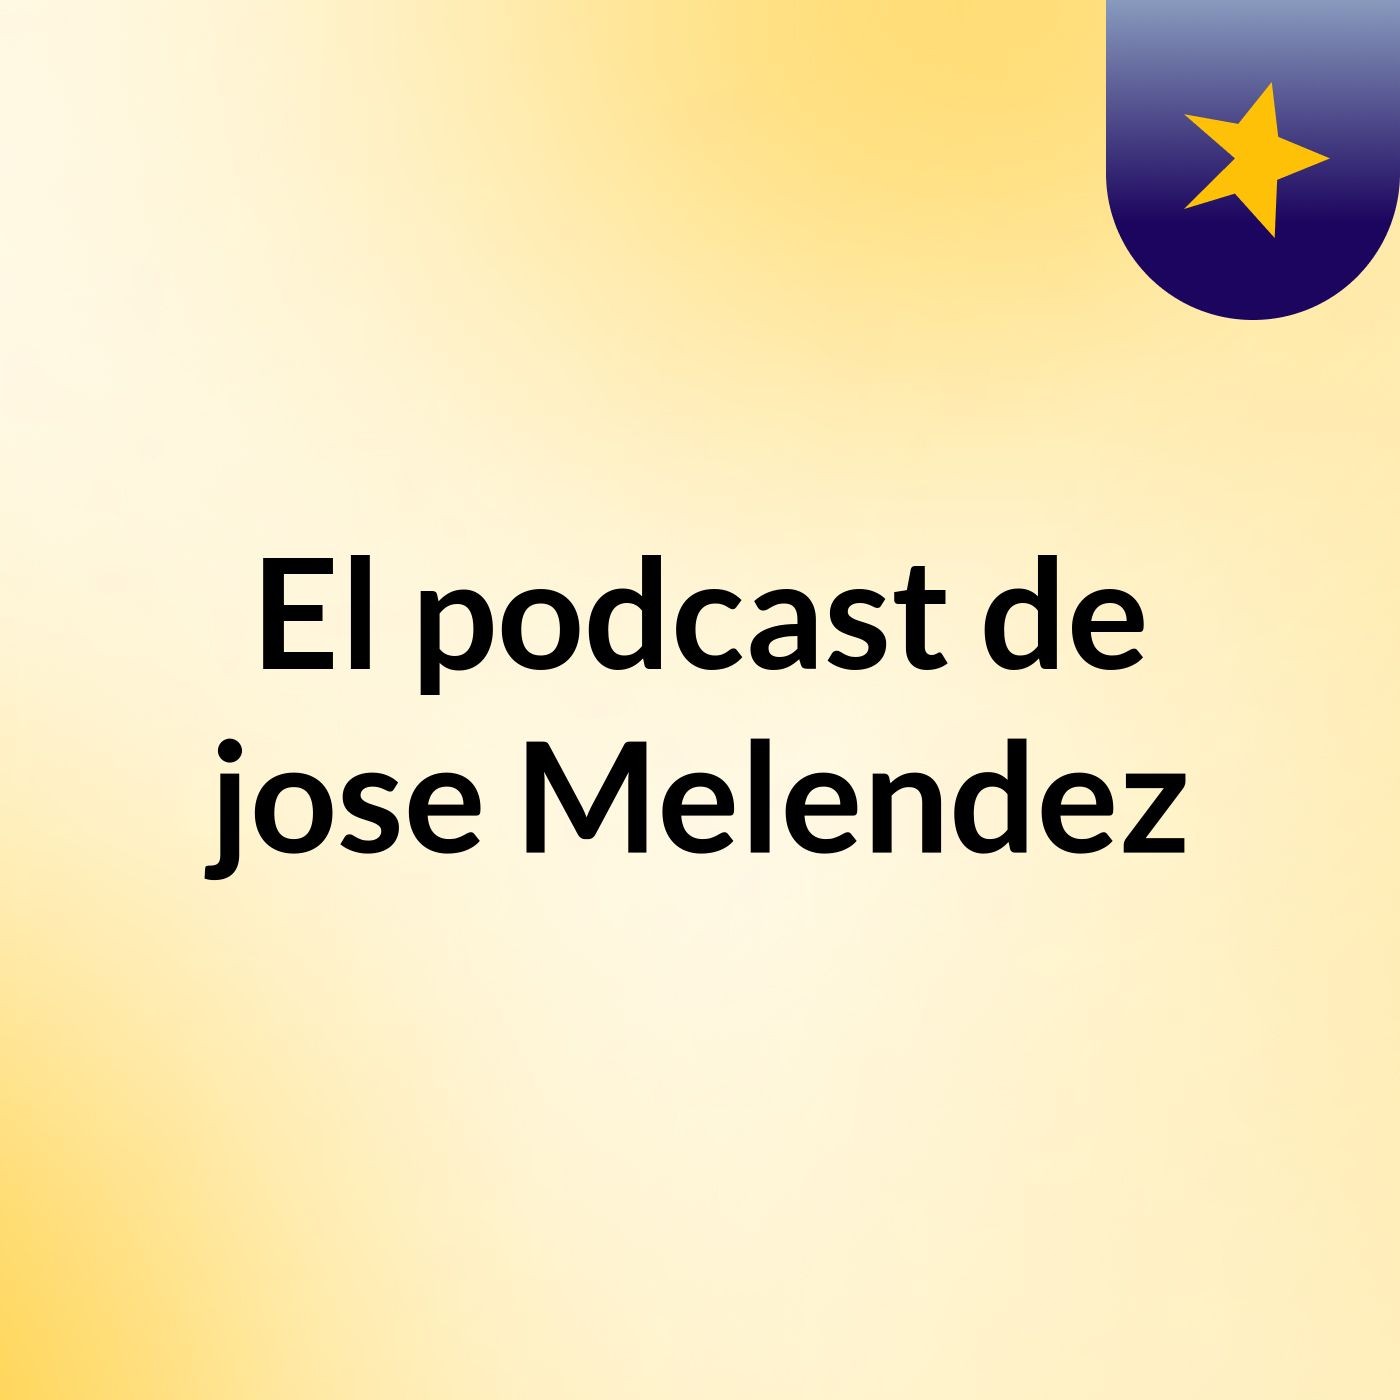 El podcast de jose Melendez